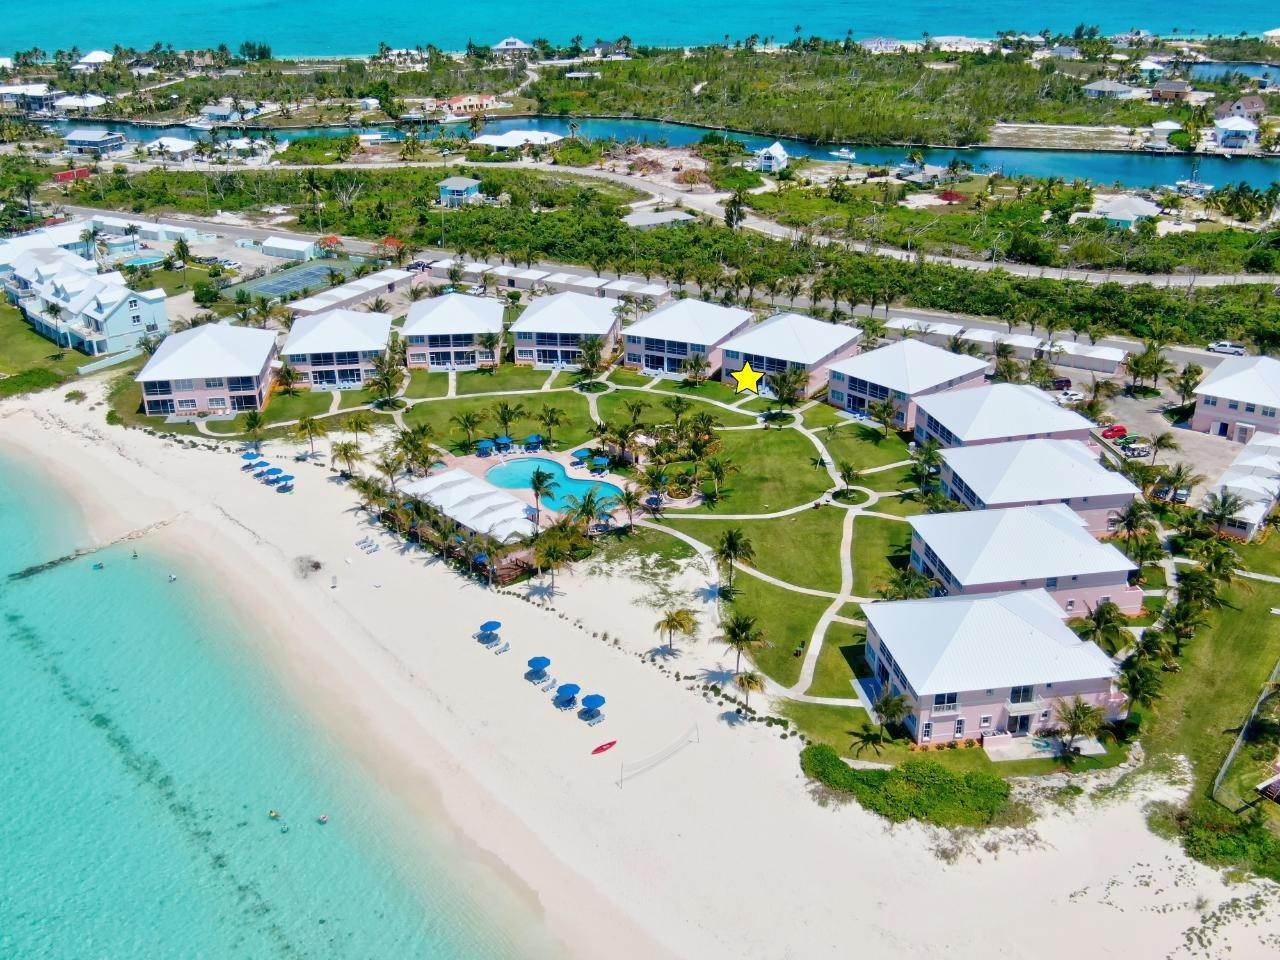 1. Condominiums for Sale at Bahama Beach Club, Treasure Cay, Abaco, Bahamas